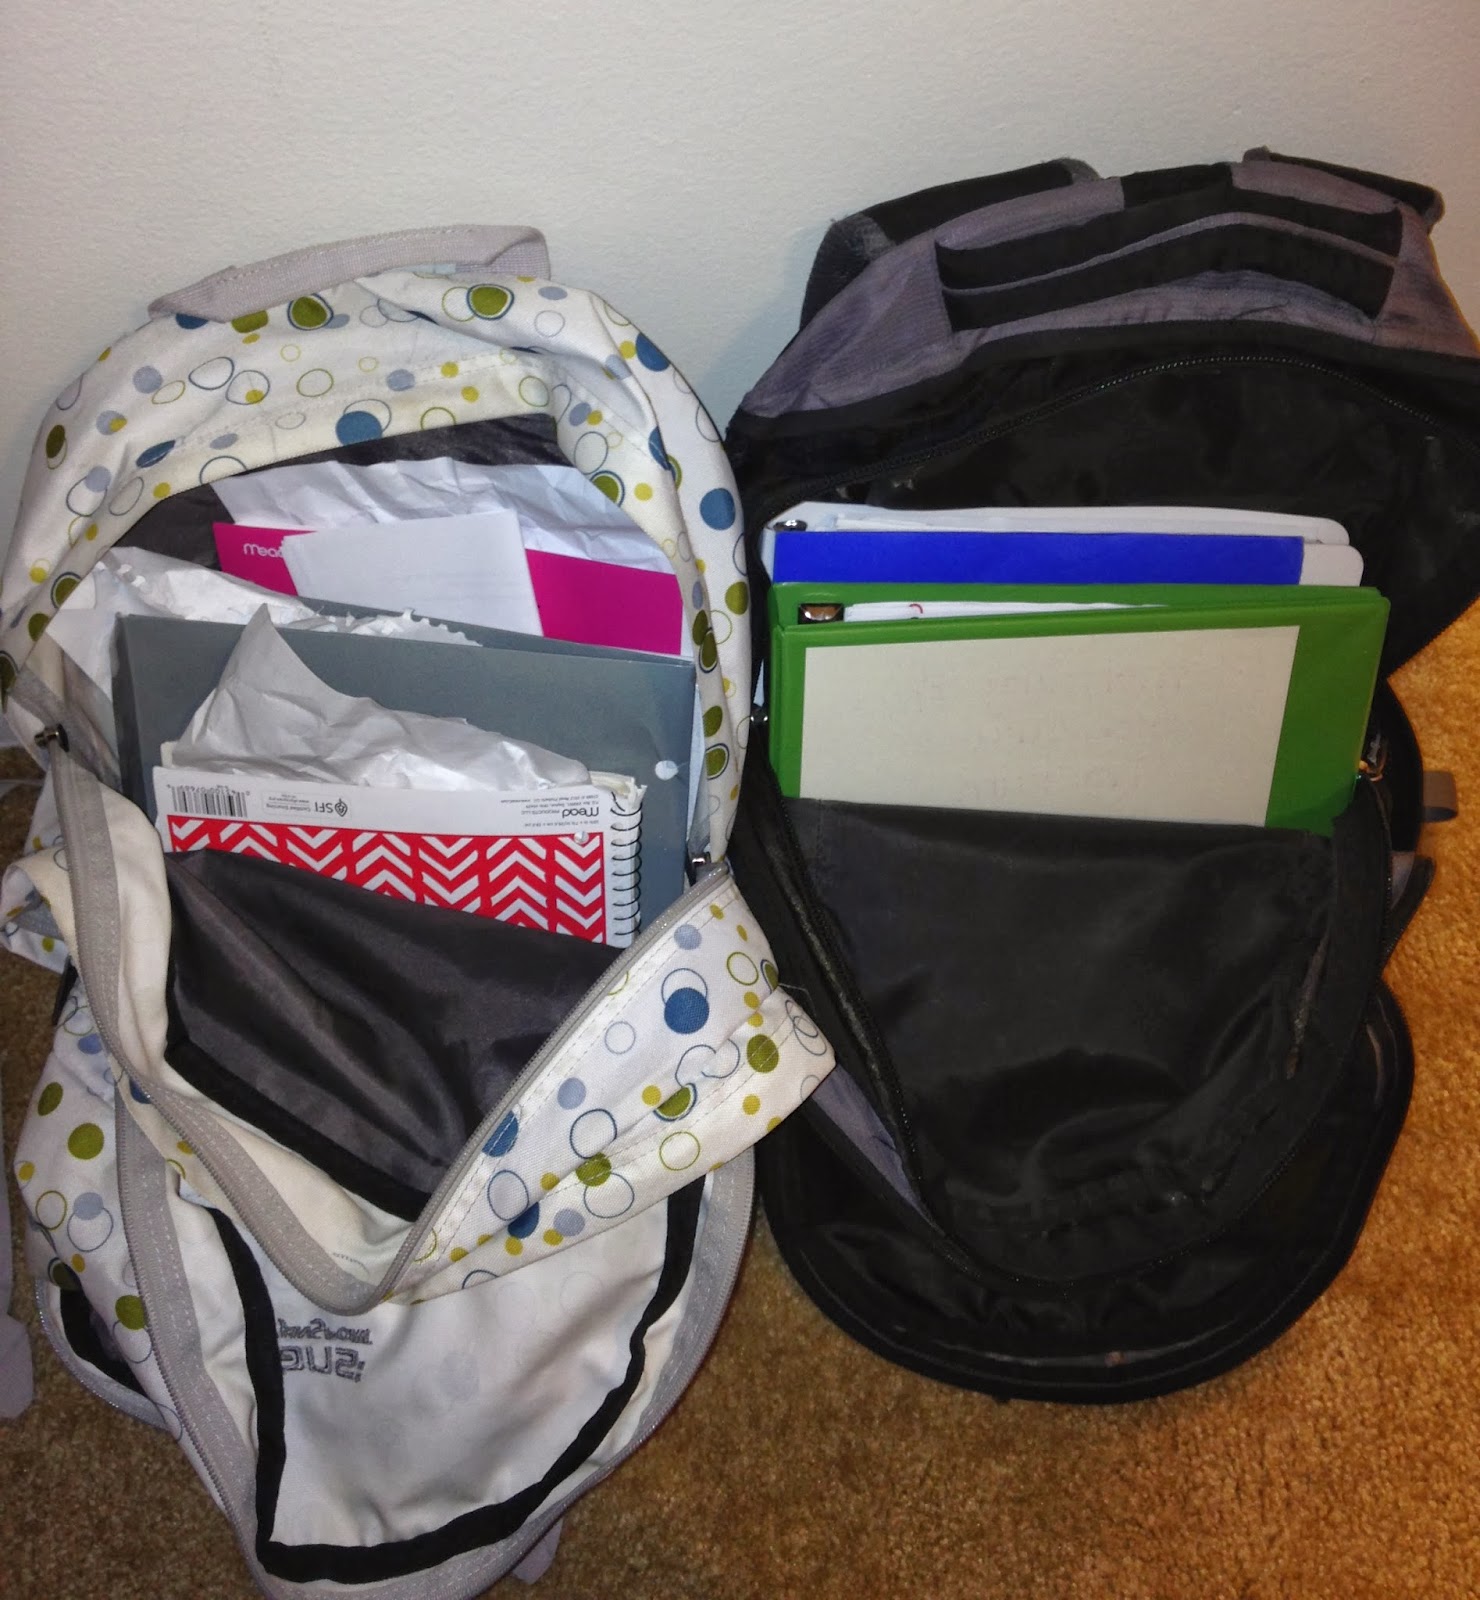 bookbag clipart organized backpack